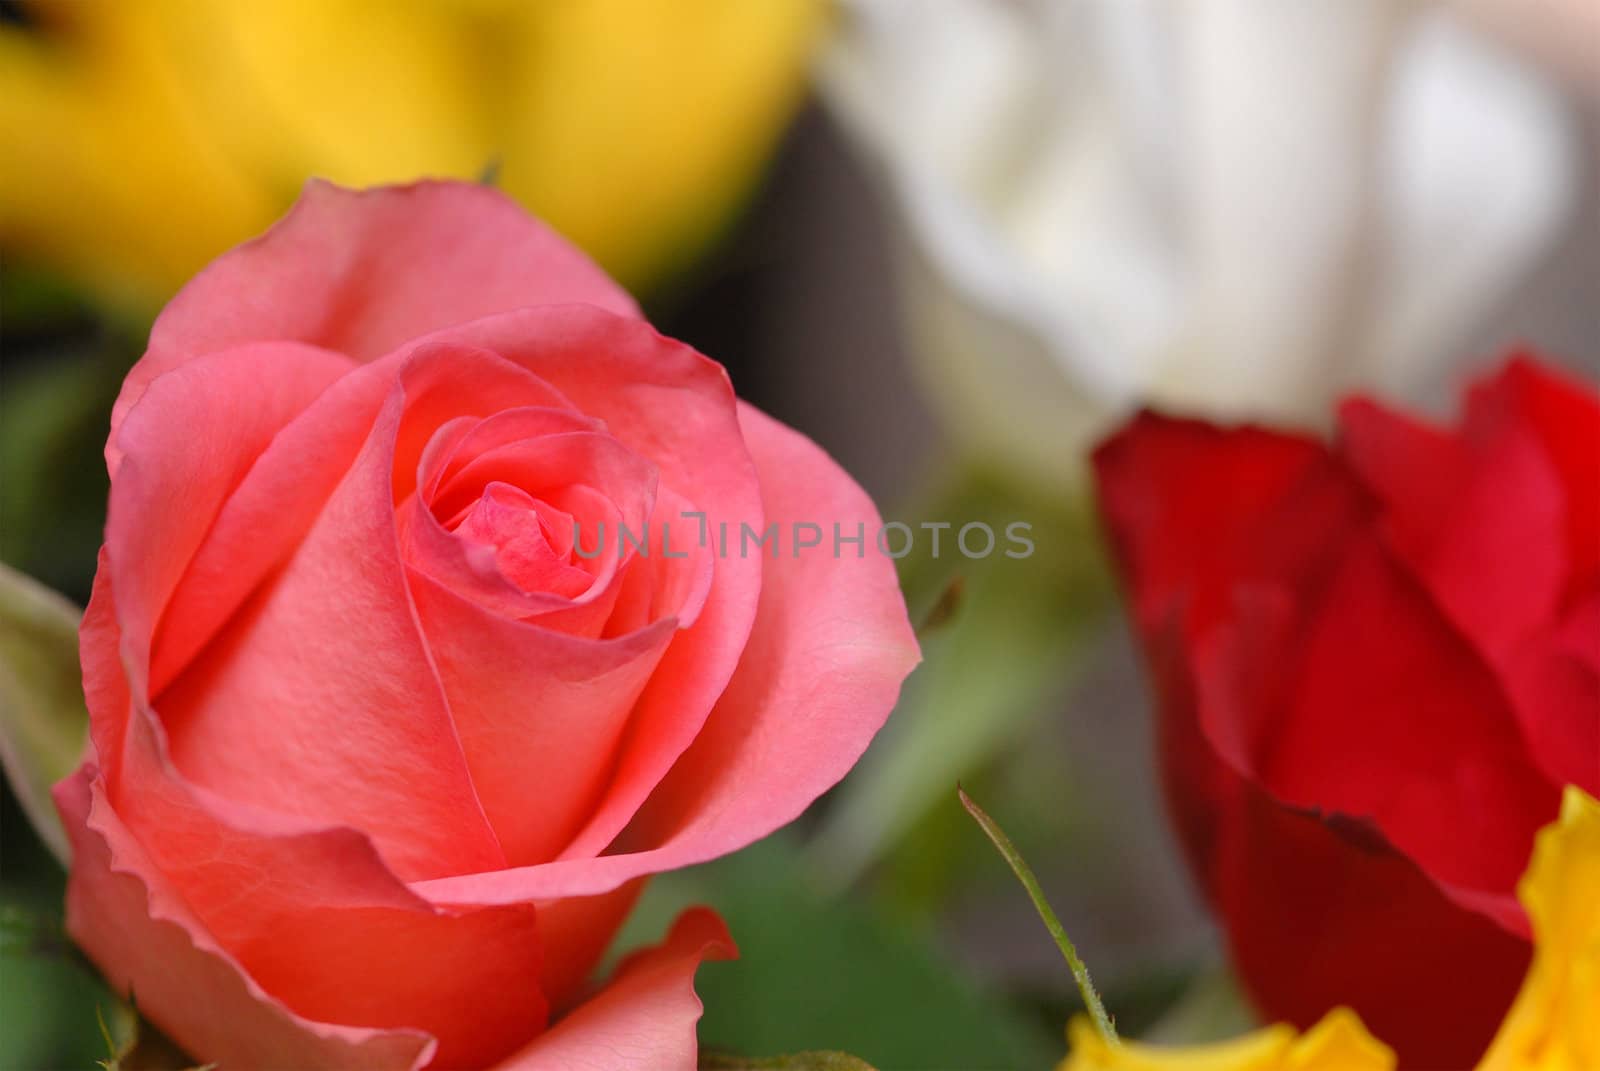 Pink rose by kekanger